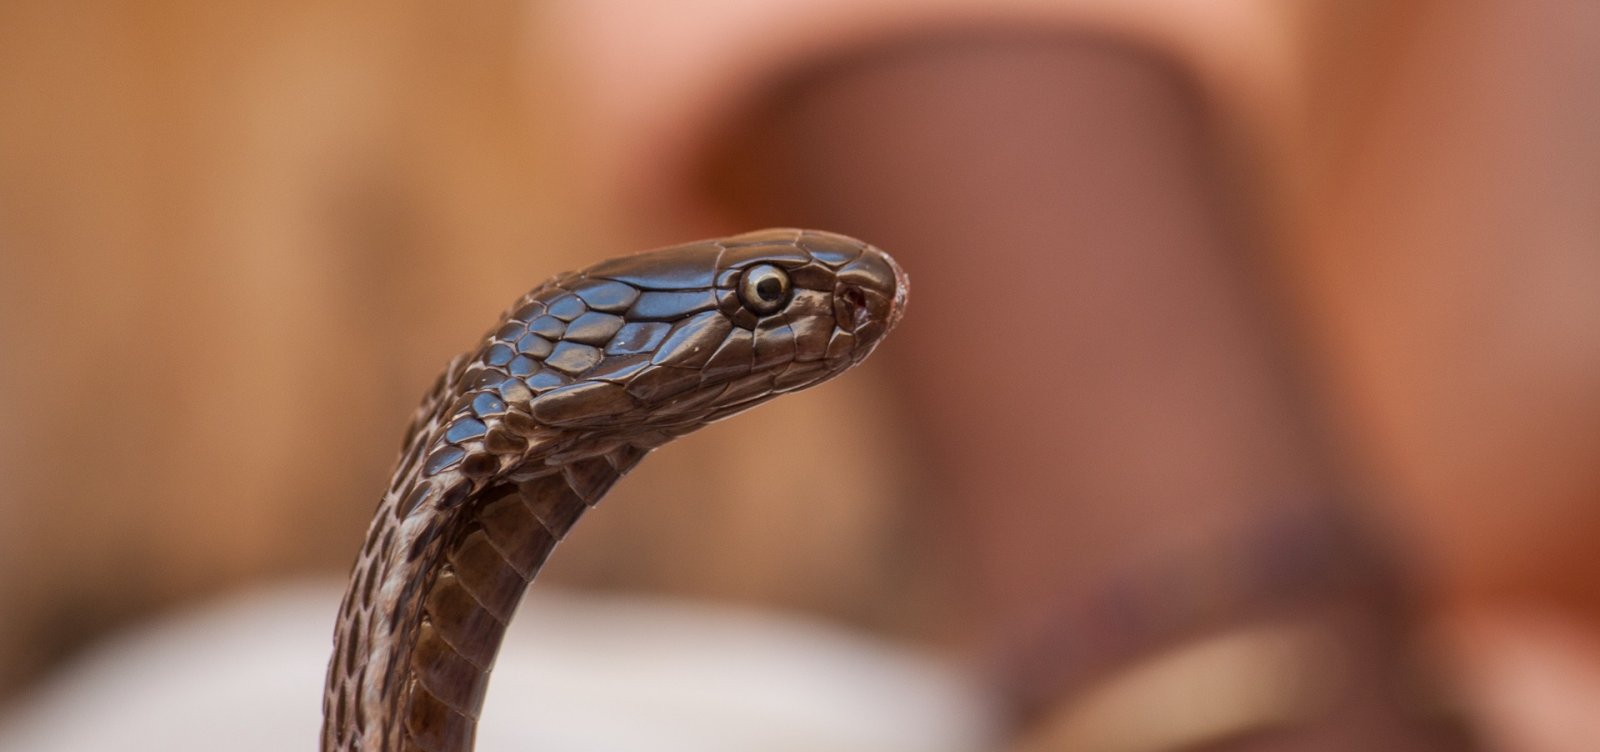 Ufba já devolveu à natureza 50 serpentes desde início do isolamento social